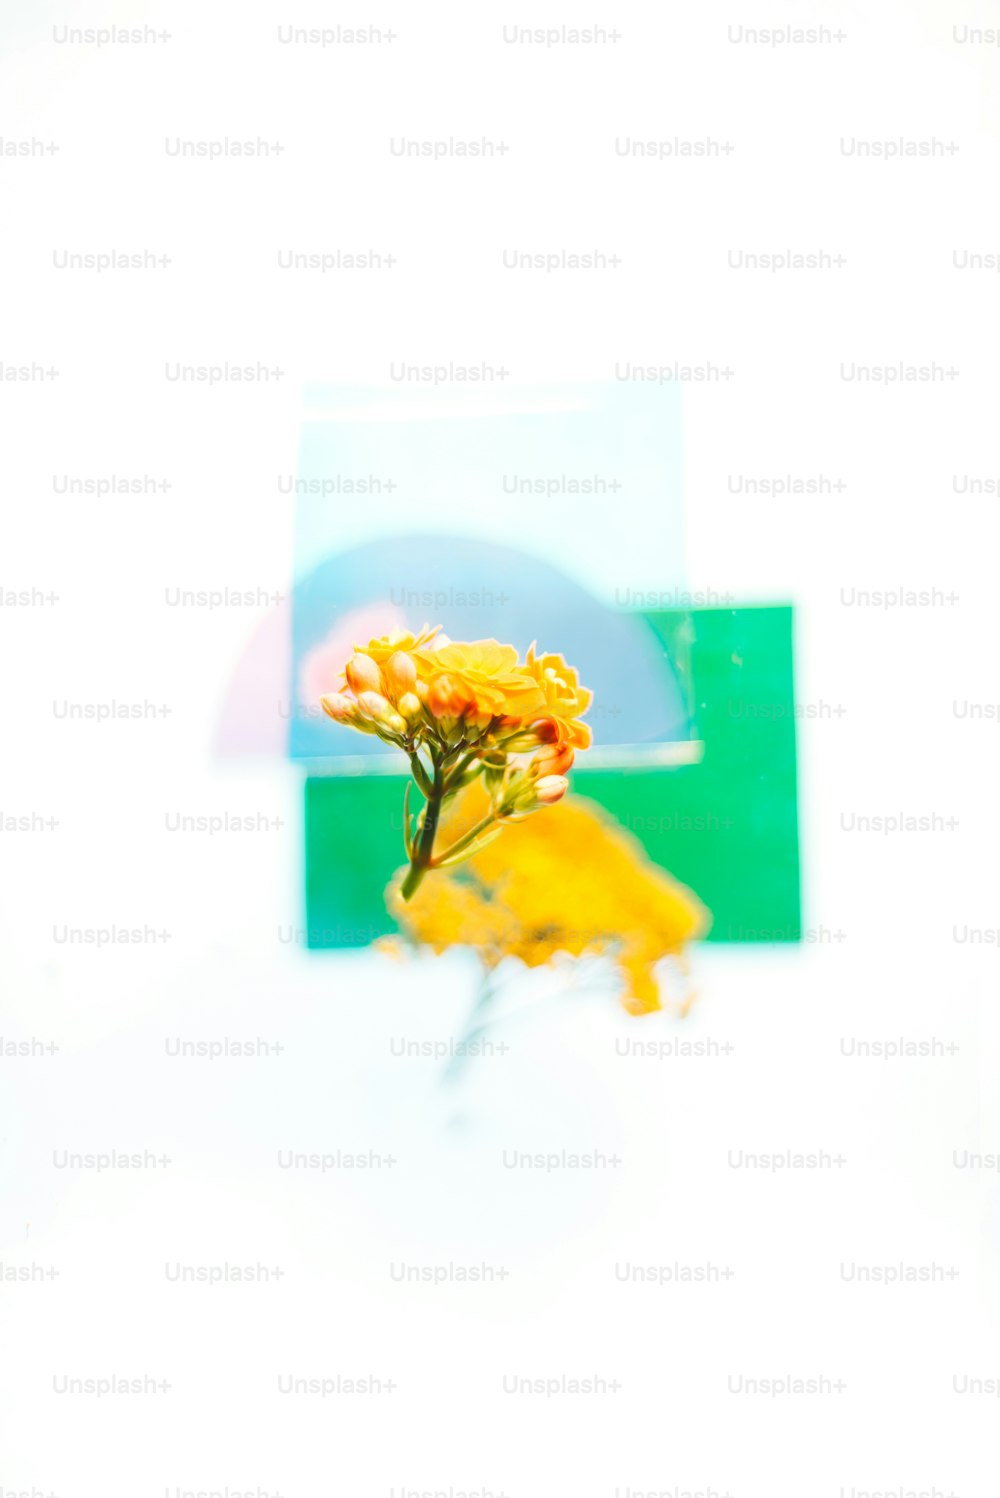 ein Bild einer gelben Blume vor einem weißen Hintergrund